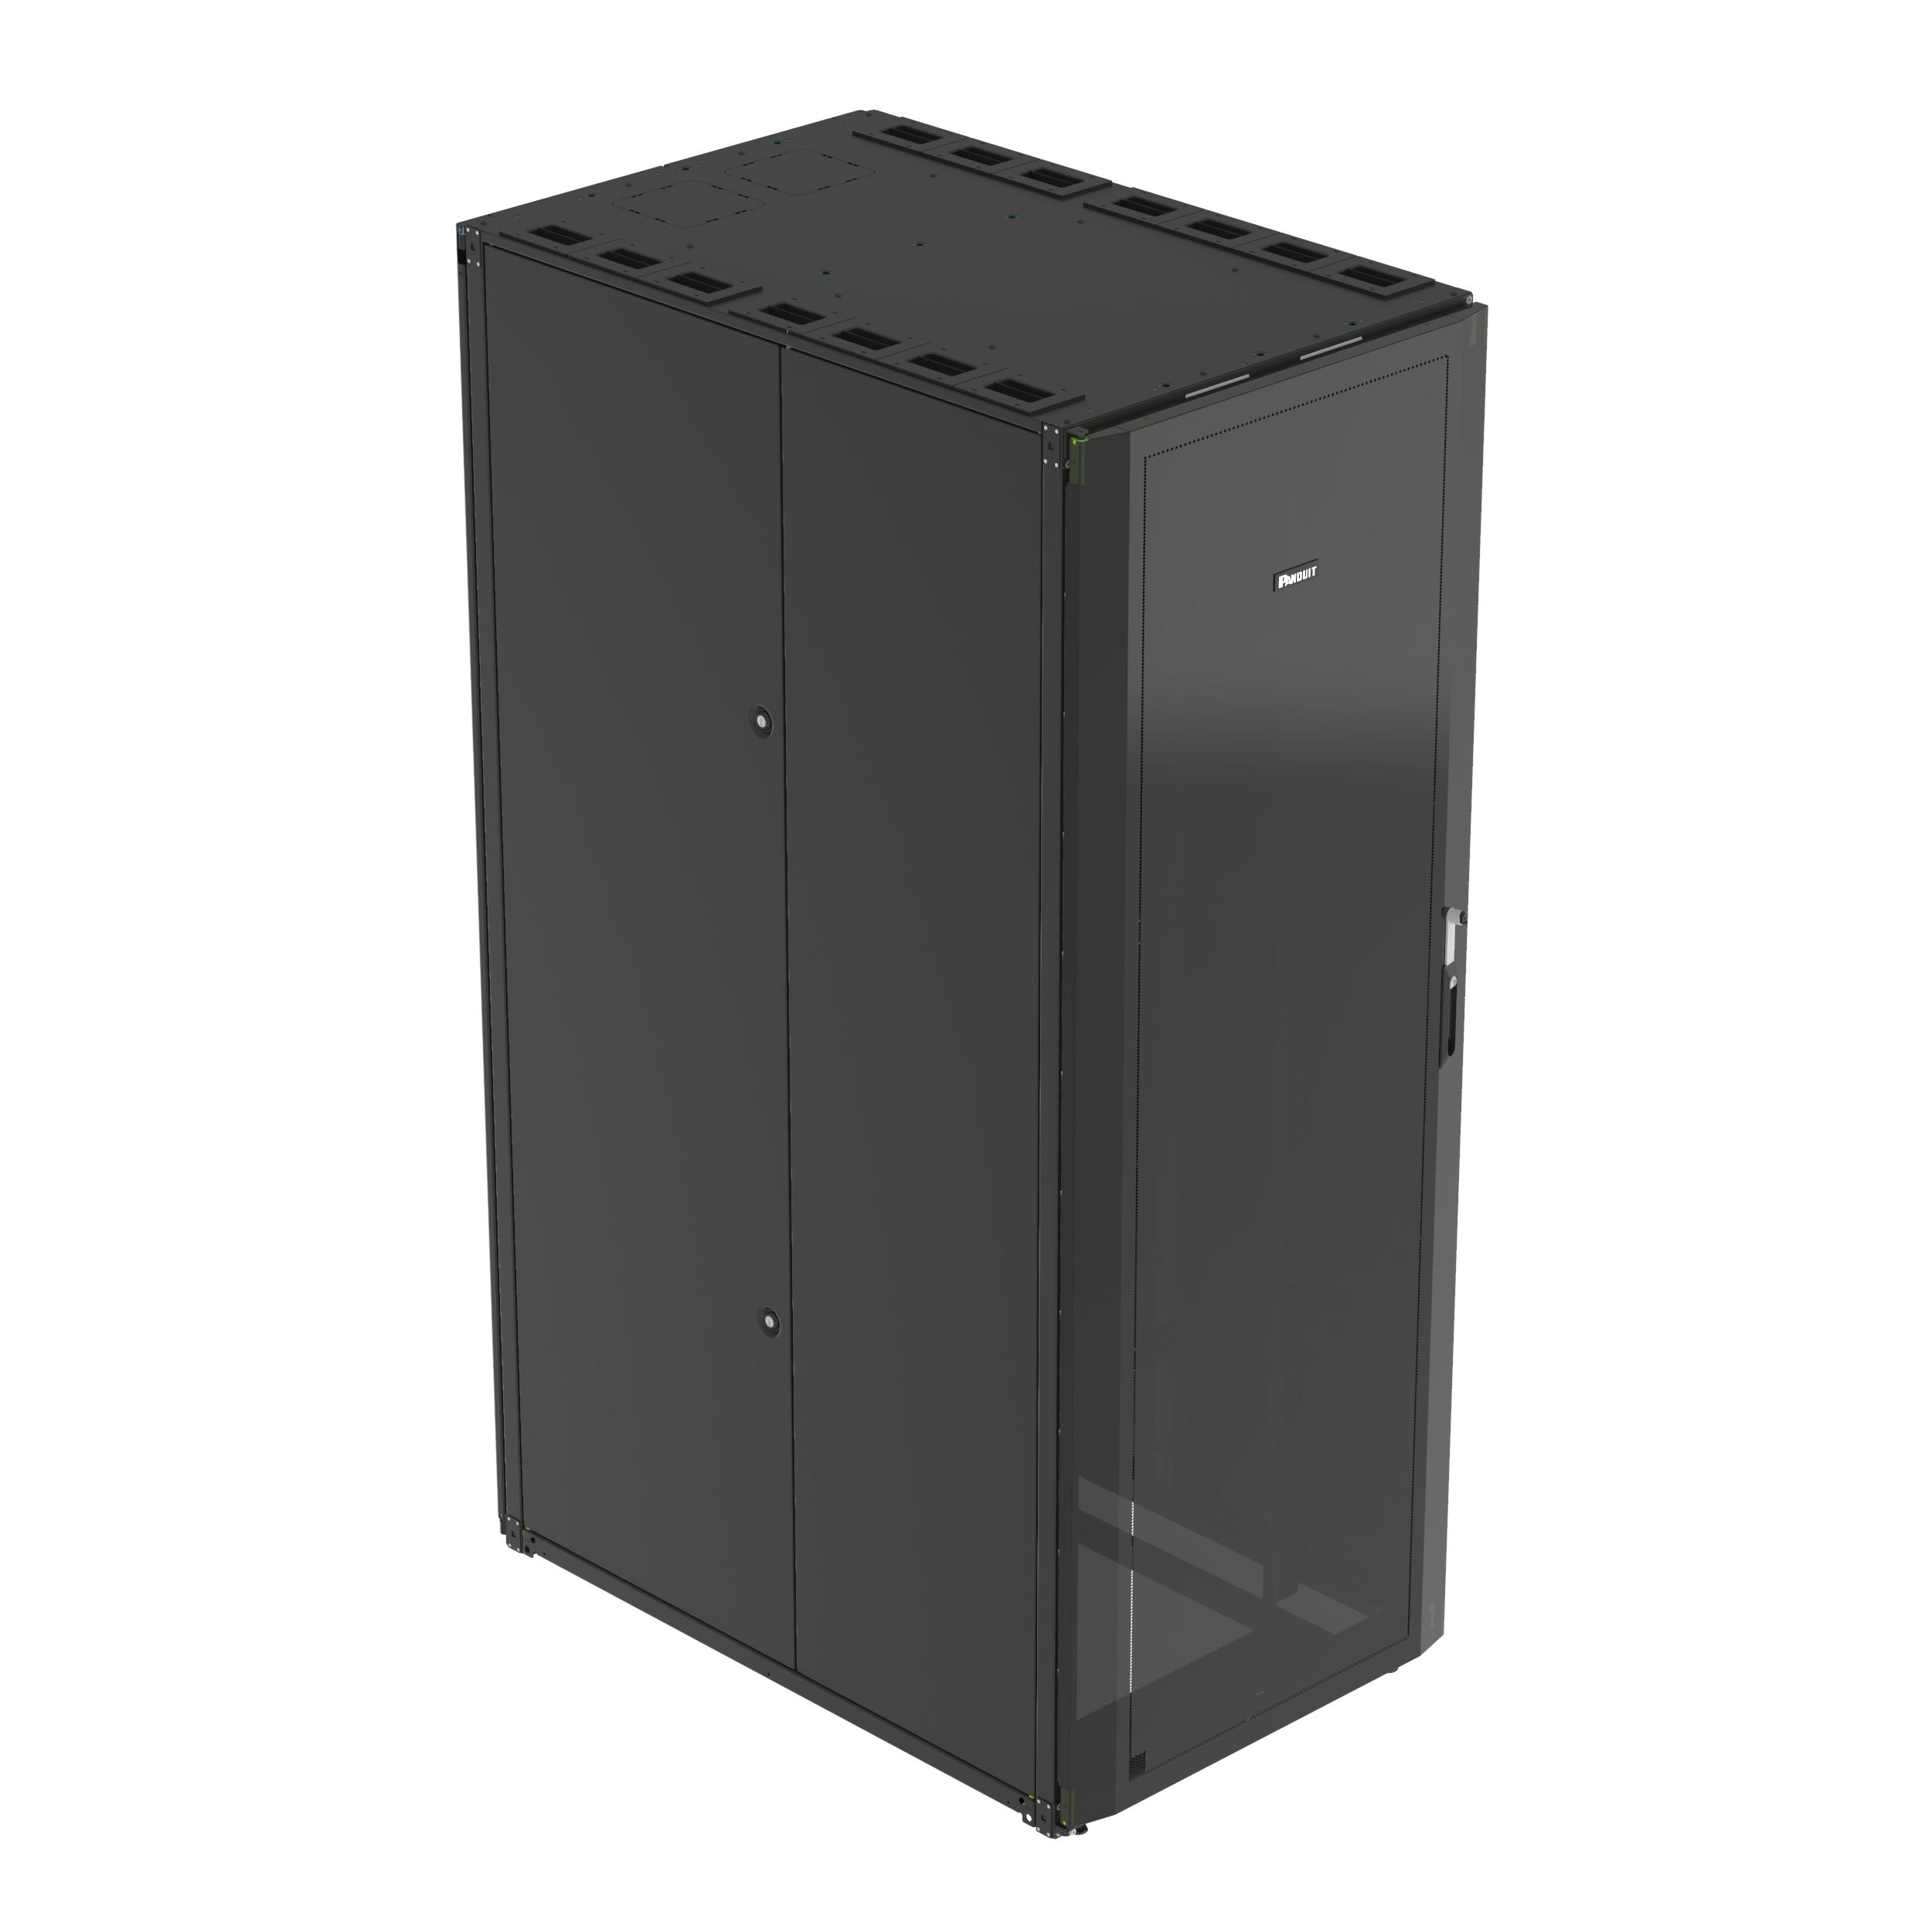 Panduit S8212B Net-Access™ S-Type Cabinet, 42 RU, Black, 800mm Wide